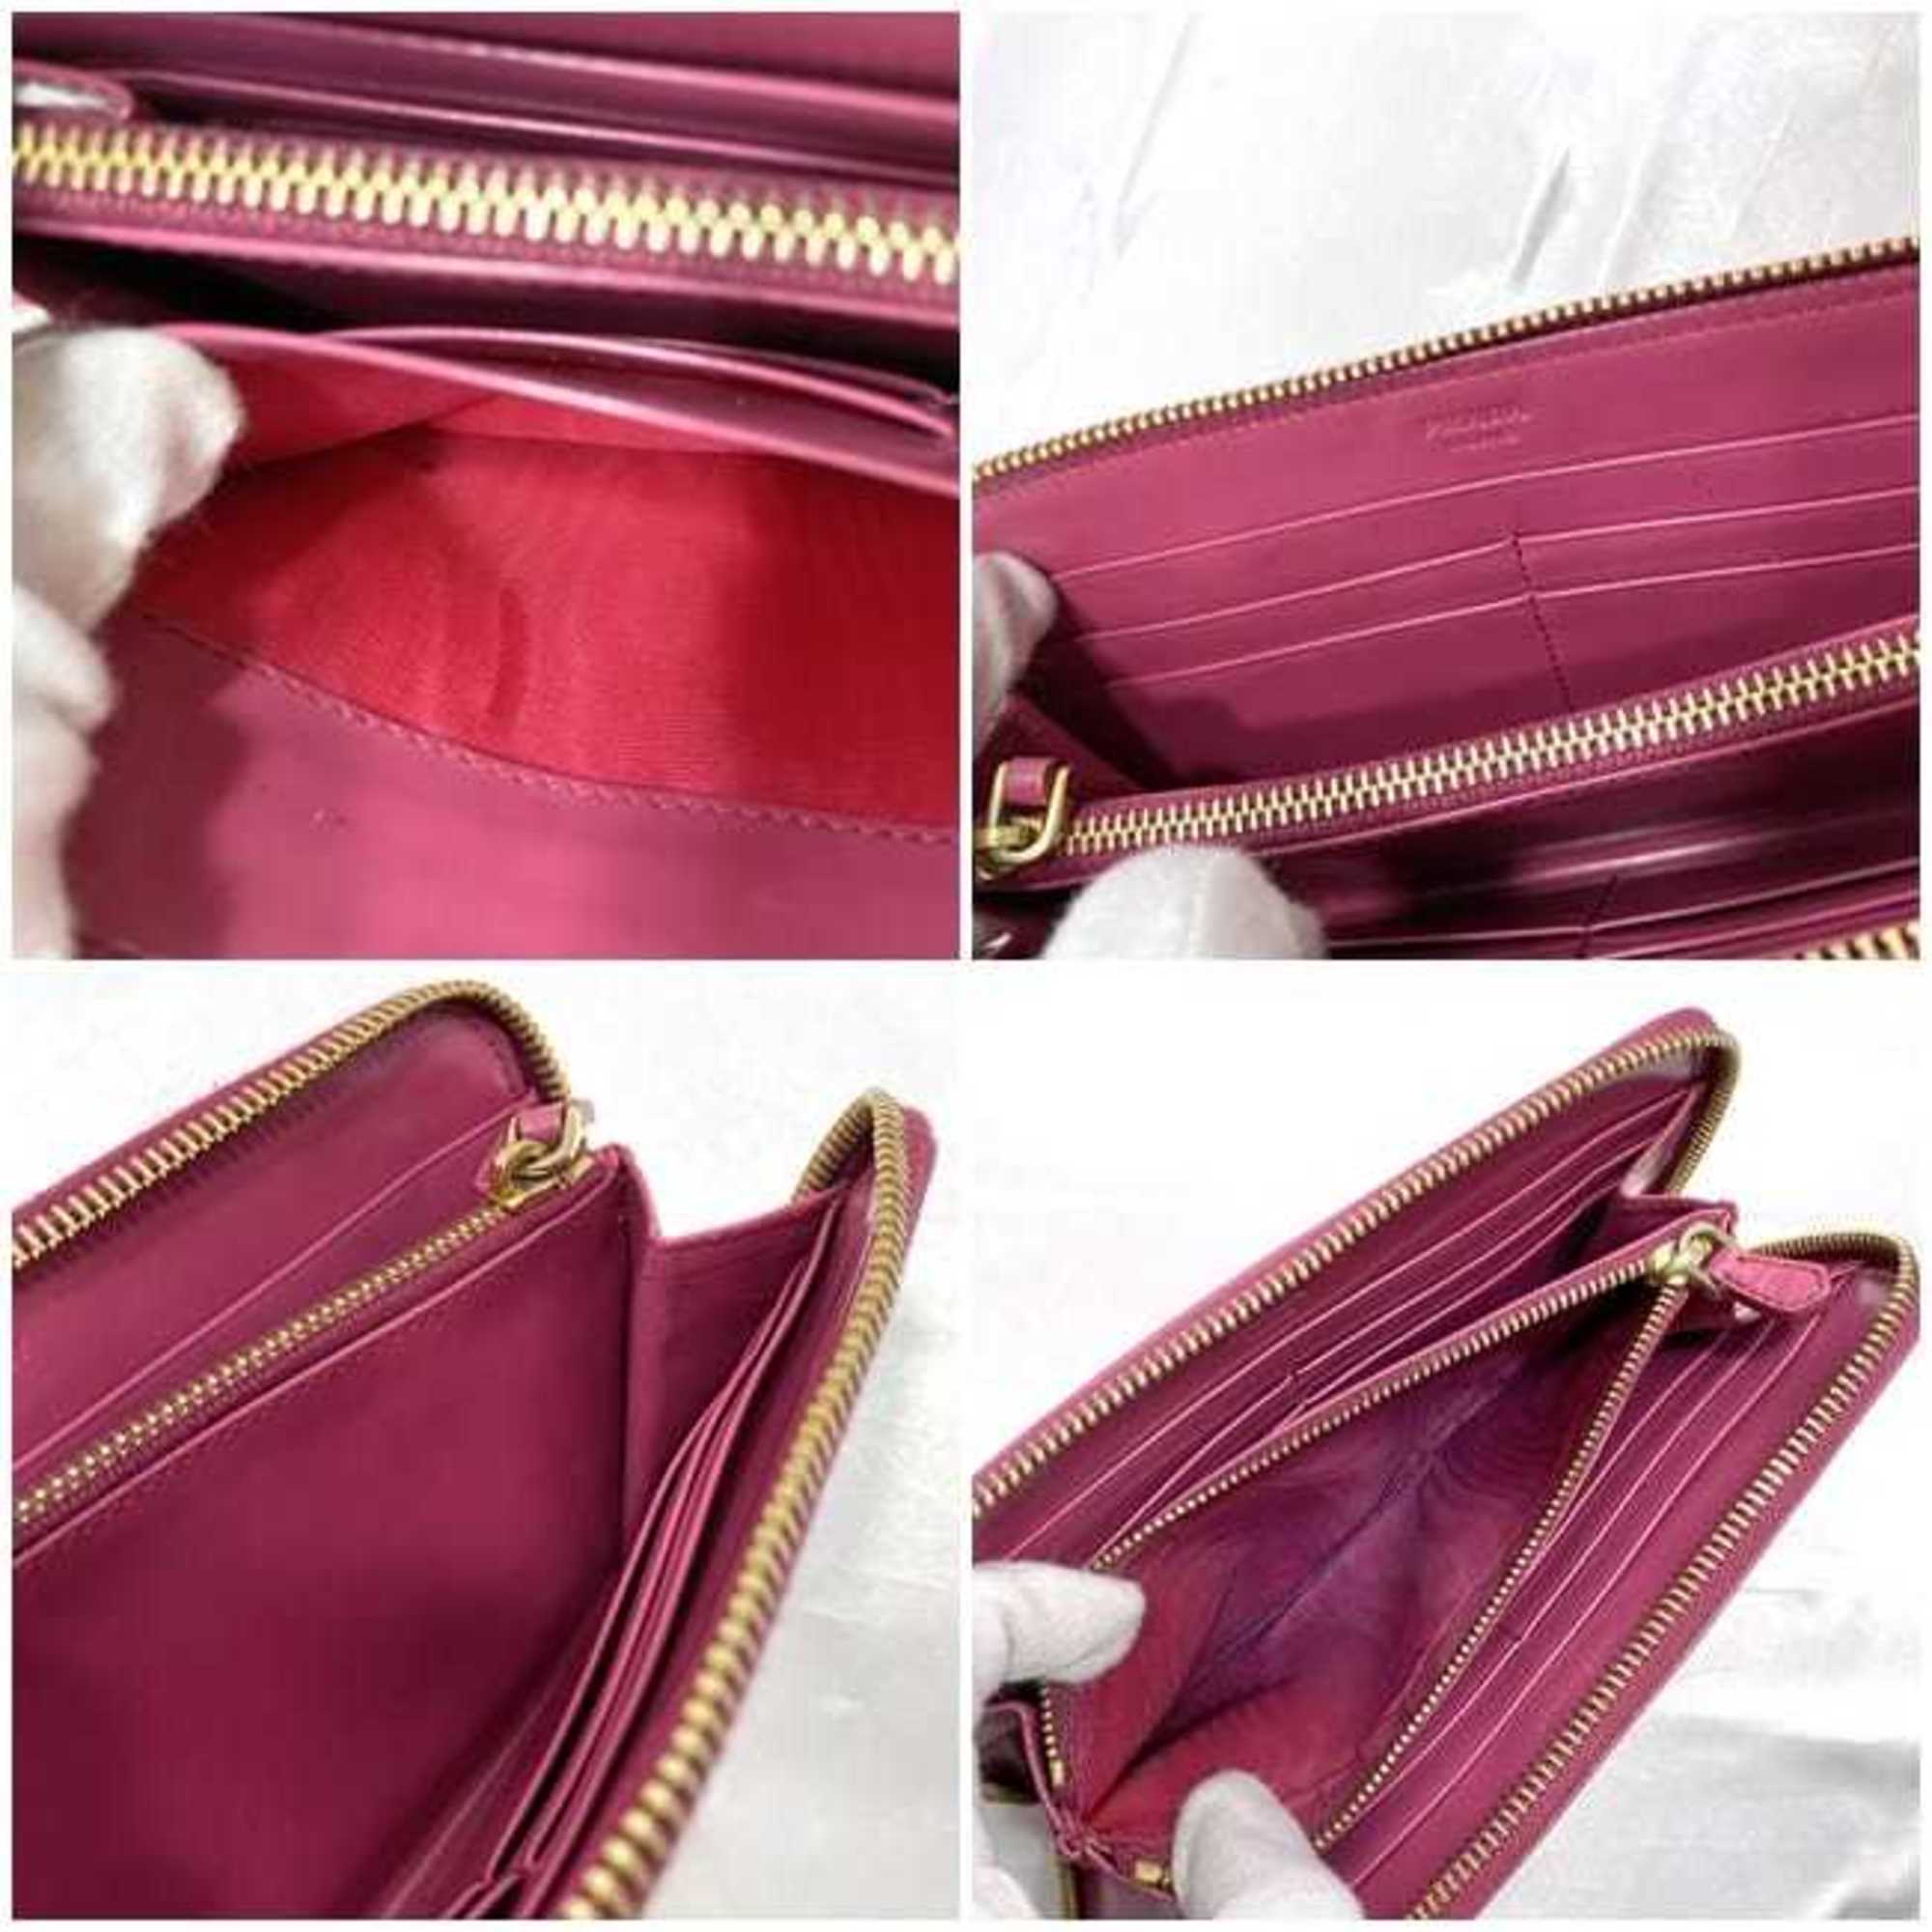 Prada Round Long Wallet Pink 1M0506 ec-19896 Leather PRADA Gold Ladies